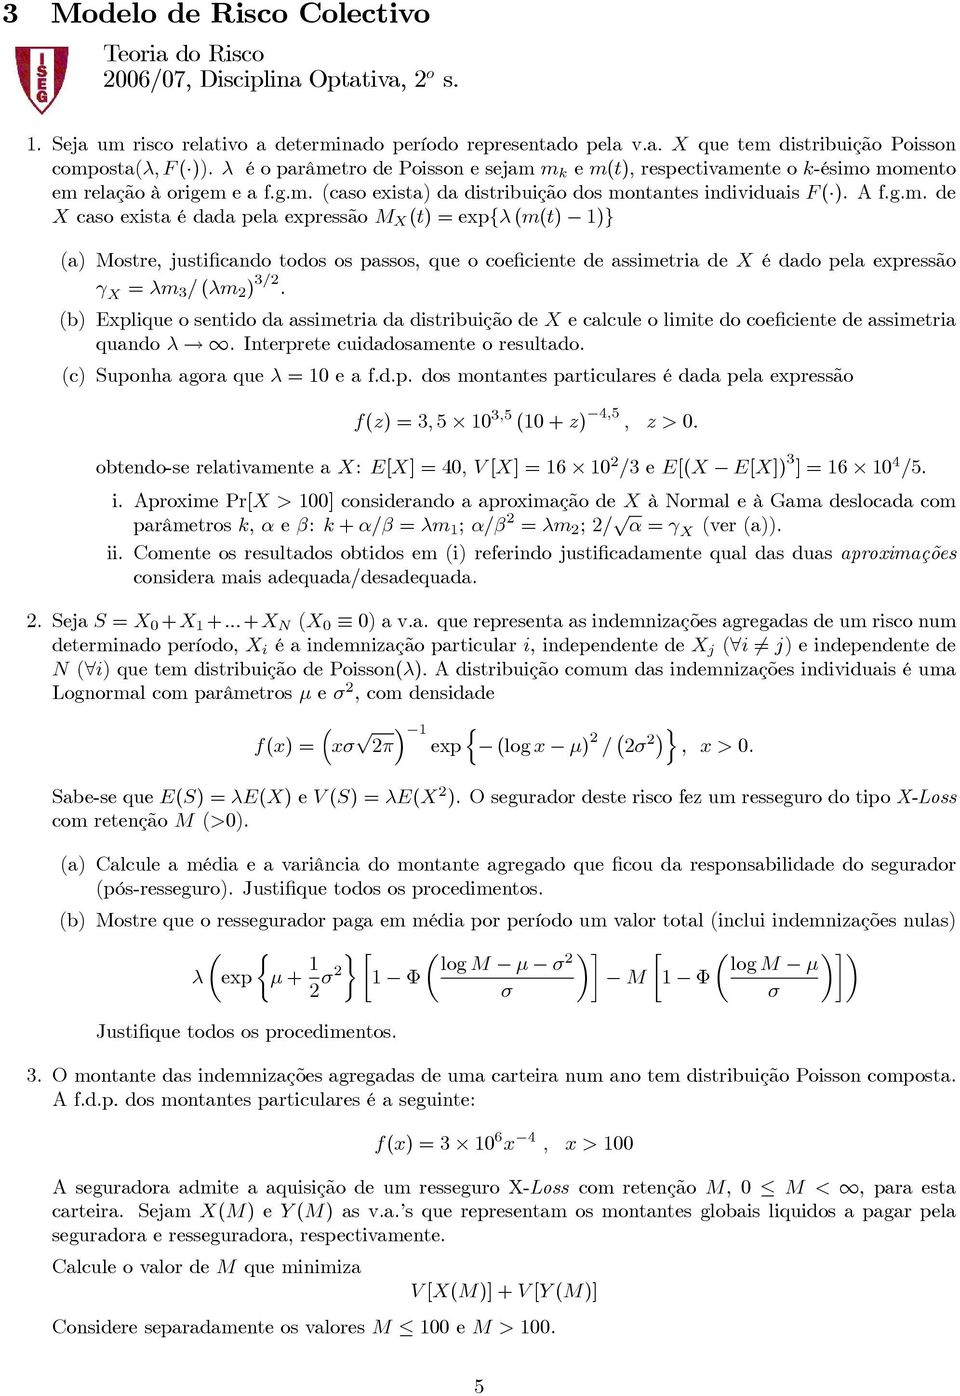 (b) Explique o sentido da assimetria da distribuição de X e calcule o limite do coeficiente de assimetria quando λ. Interprete cuidadosamente o resultado. (c) Suponha agora que λ =10e a f.d.p. dos montantes particulares é dada pela expressão f(z) =3, 5 10 3,5 (10 + z) 4,5, z > 0.